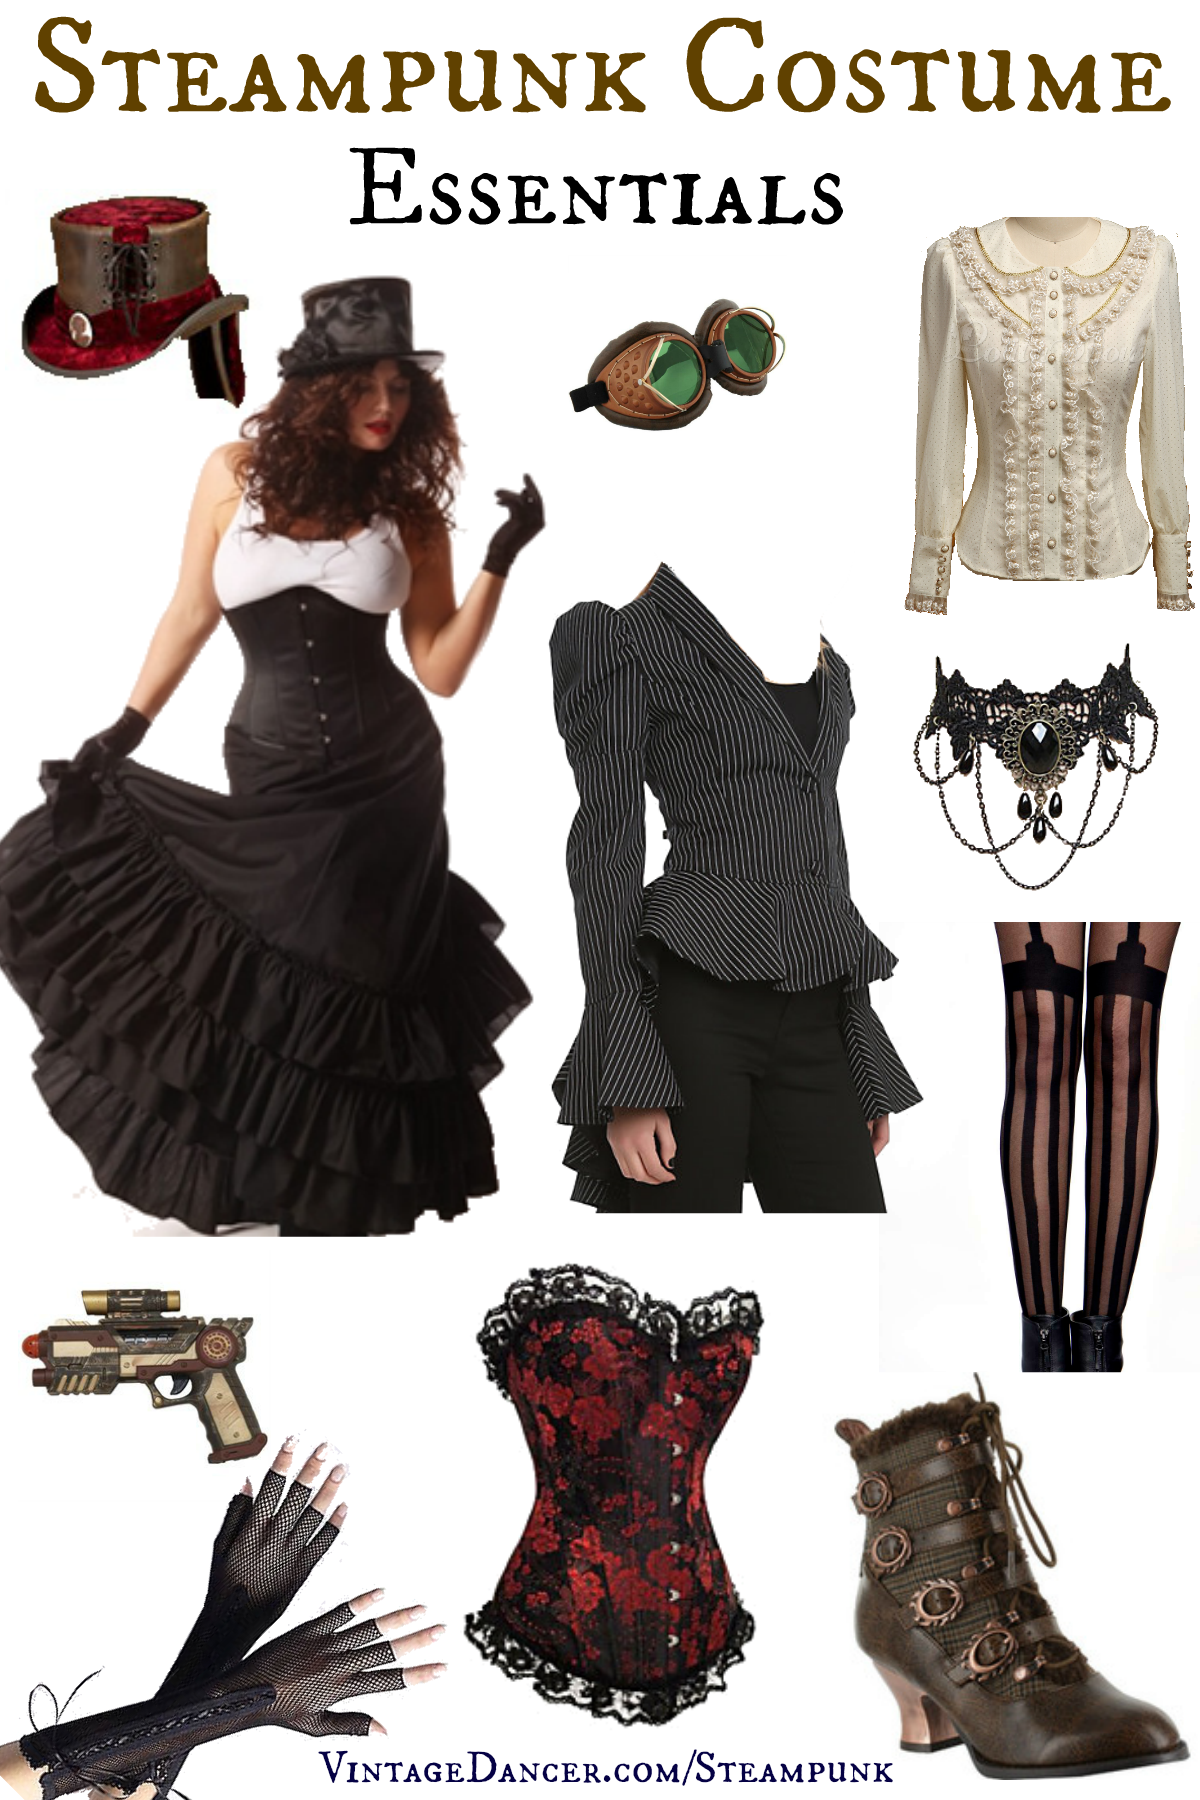 Steampunk Costume Essentials for Women